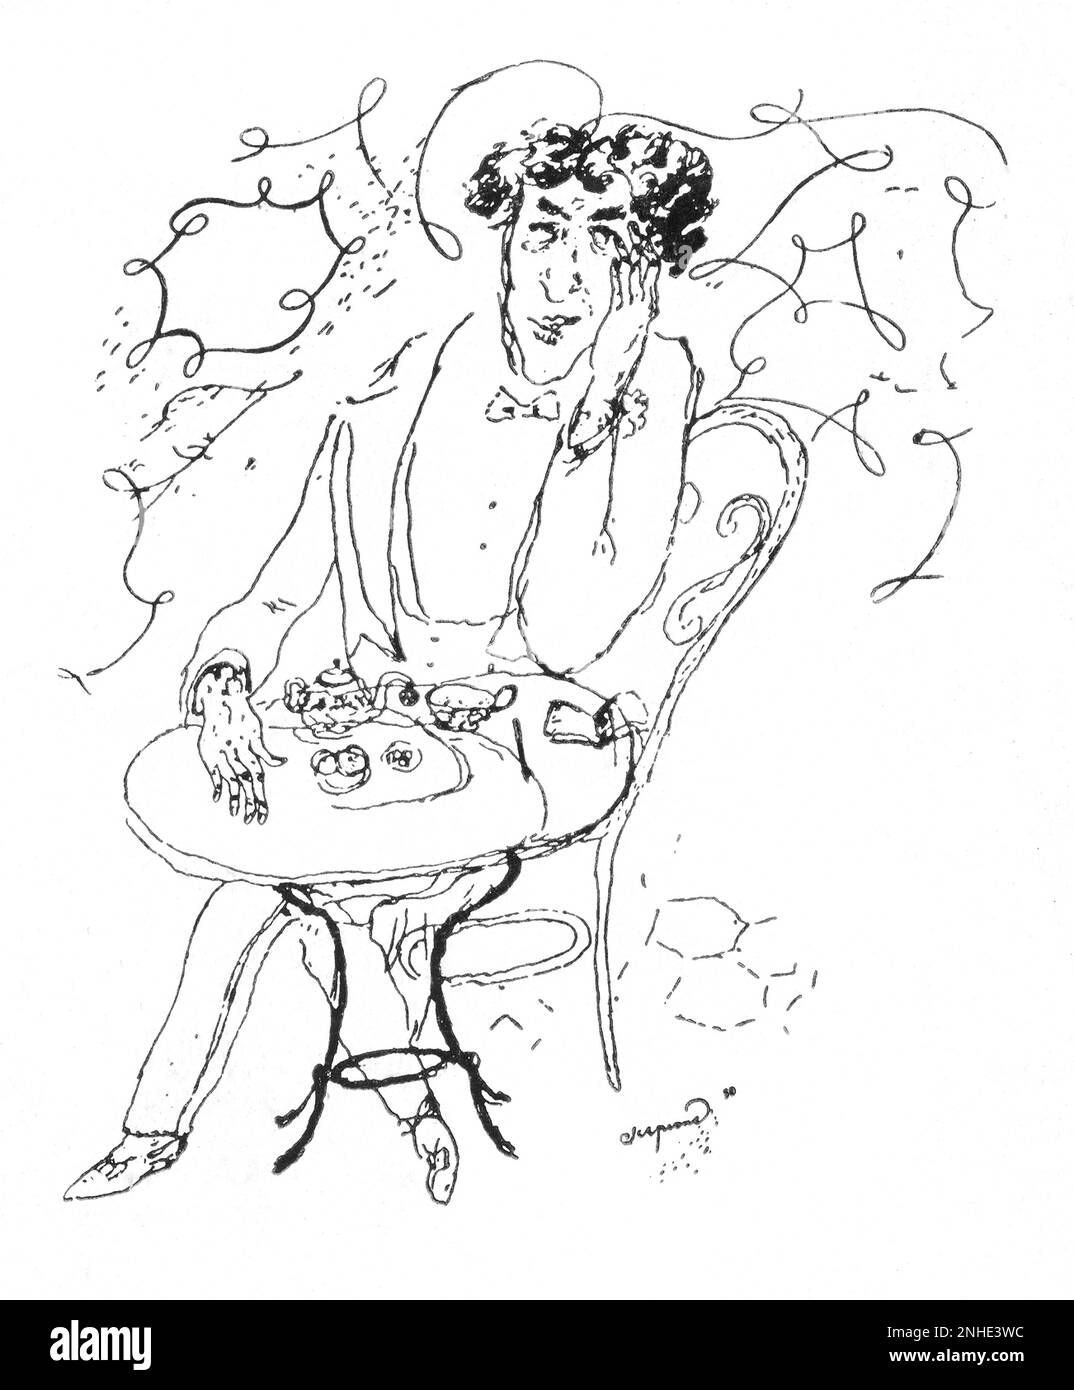 1930 , ITALIEN : der italienische Musikkomponist UND Schriftsteller BRUNO BARILLI ( 1880 - 1952 ) , das Karikaturporträt von Scipione ( 1904 - 1933 ). - MUSICA - COMPOSITORE - CLASSICA - KLASSISCH - SCRITTORE - KRITIK - KRITIKER - LETTERATO - LETTERATURA - LITERATUR - Rituto - Karikatura - die - tè ---- Archivio GBB Stockfoto